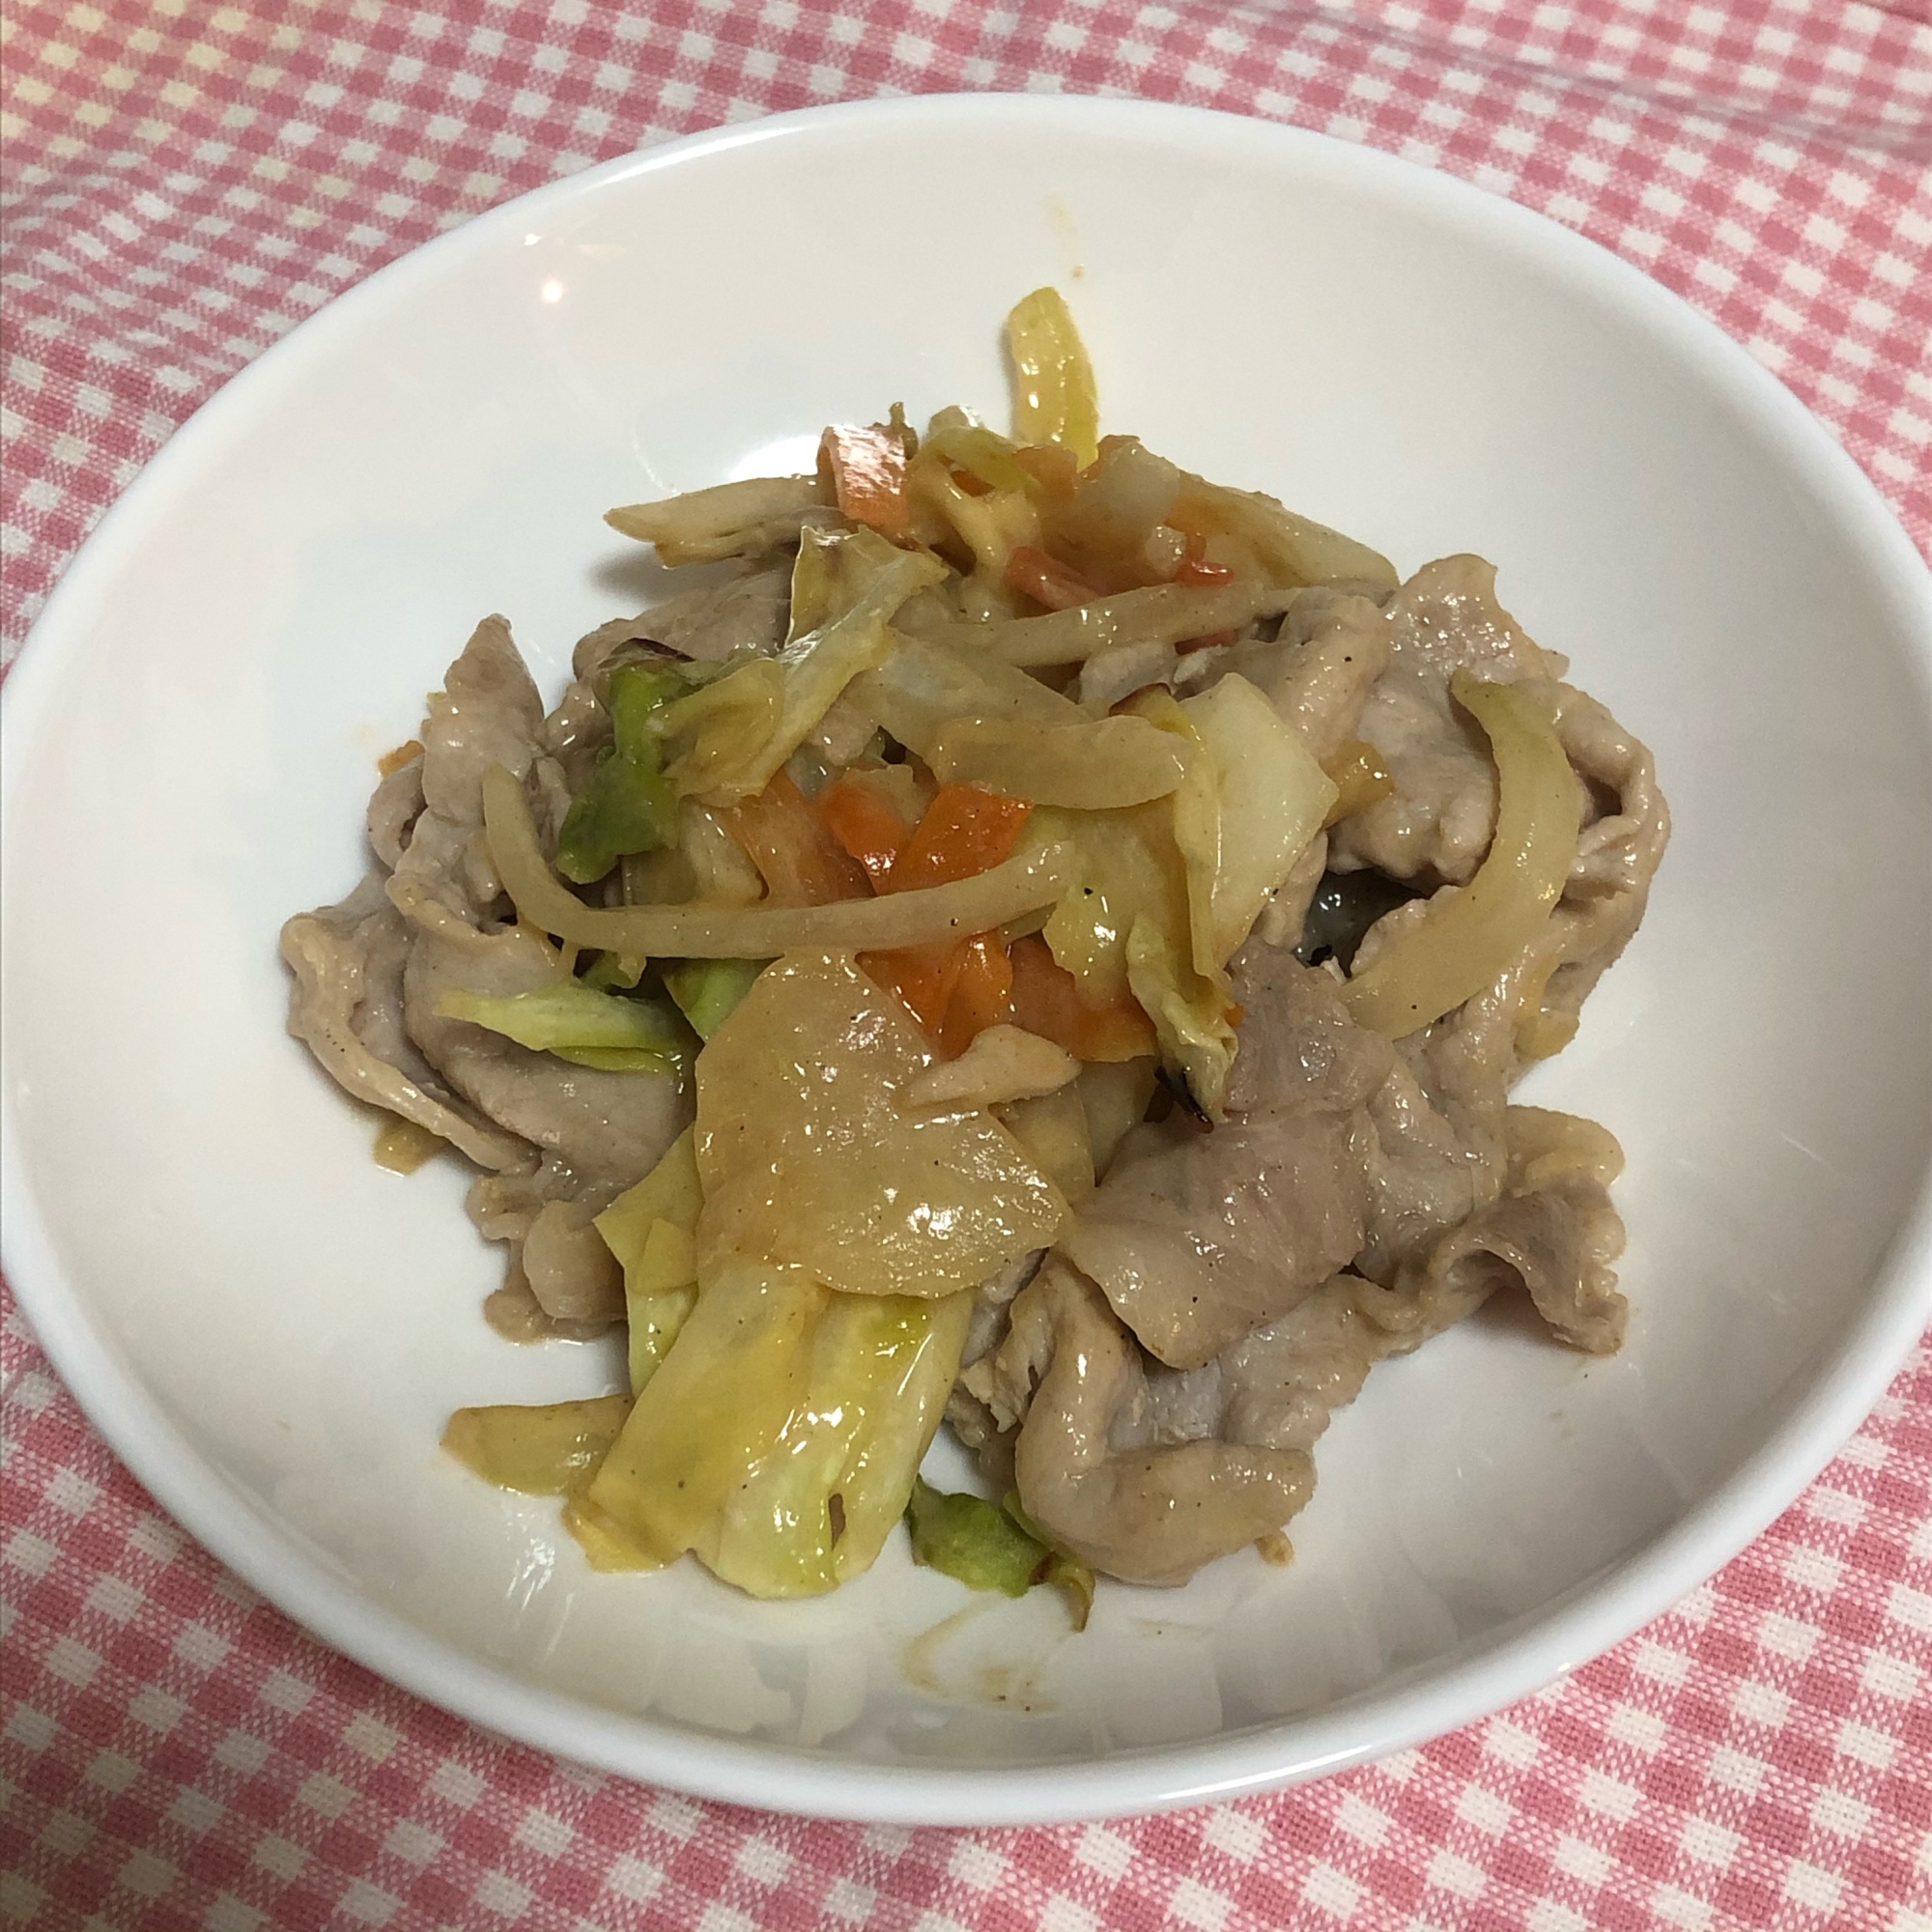 豚肉と野菜の味噌マヨ炒め